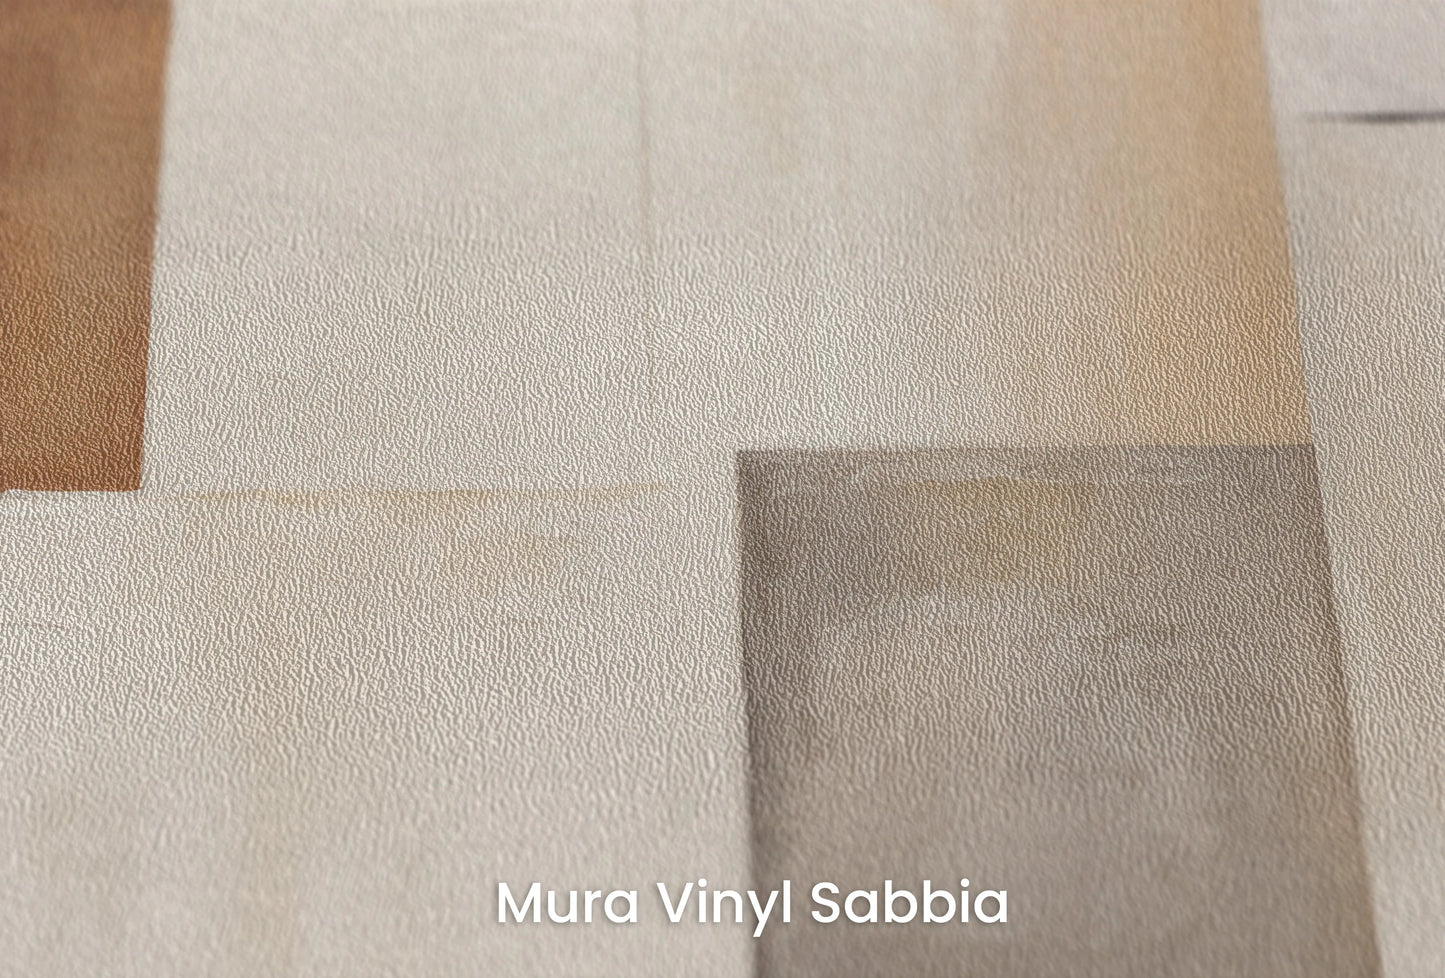 Zbliżenie na artystyczną fototapetę o nazwie Earth Tone Mosaic na podłożu Mura Vinyl Sabbia struktura grubego ziarna piasku.